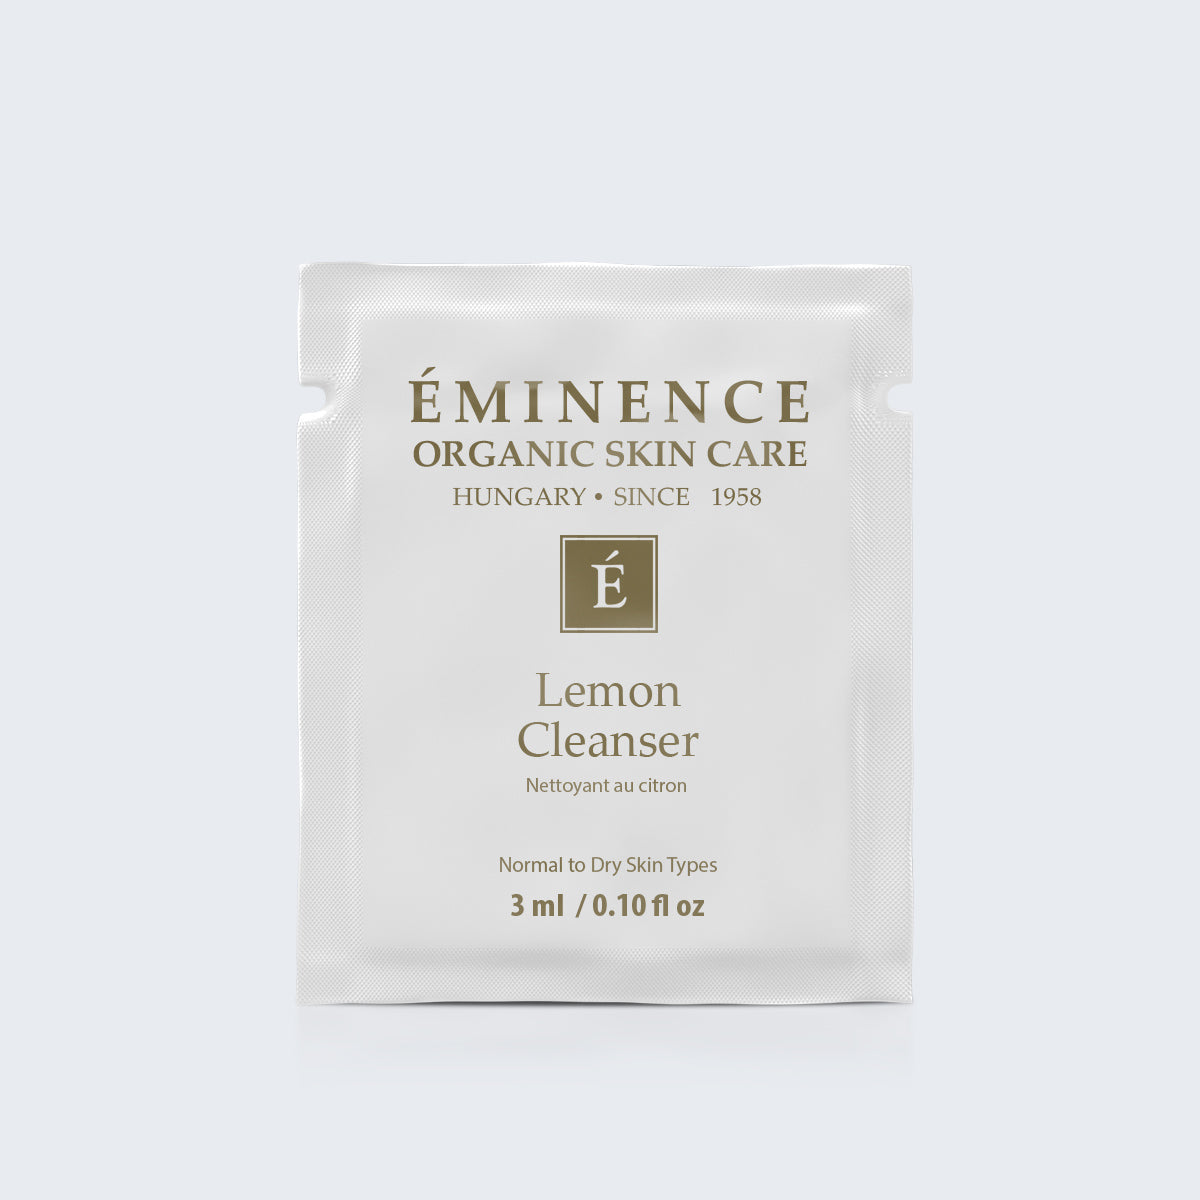 Eminence Organics Lemon Cleanser Card Sample